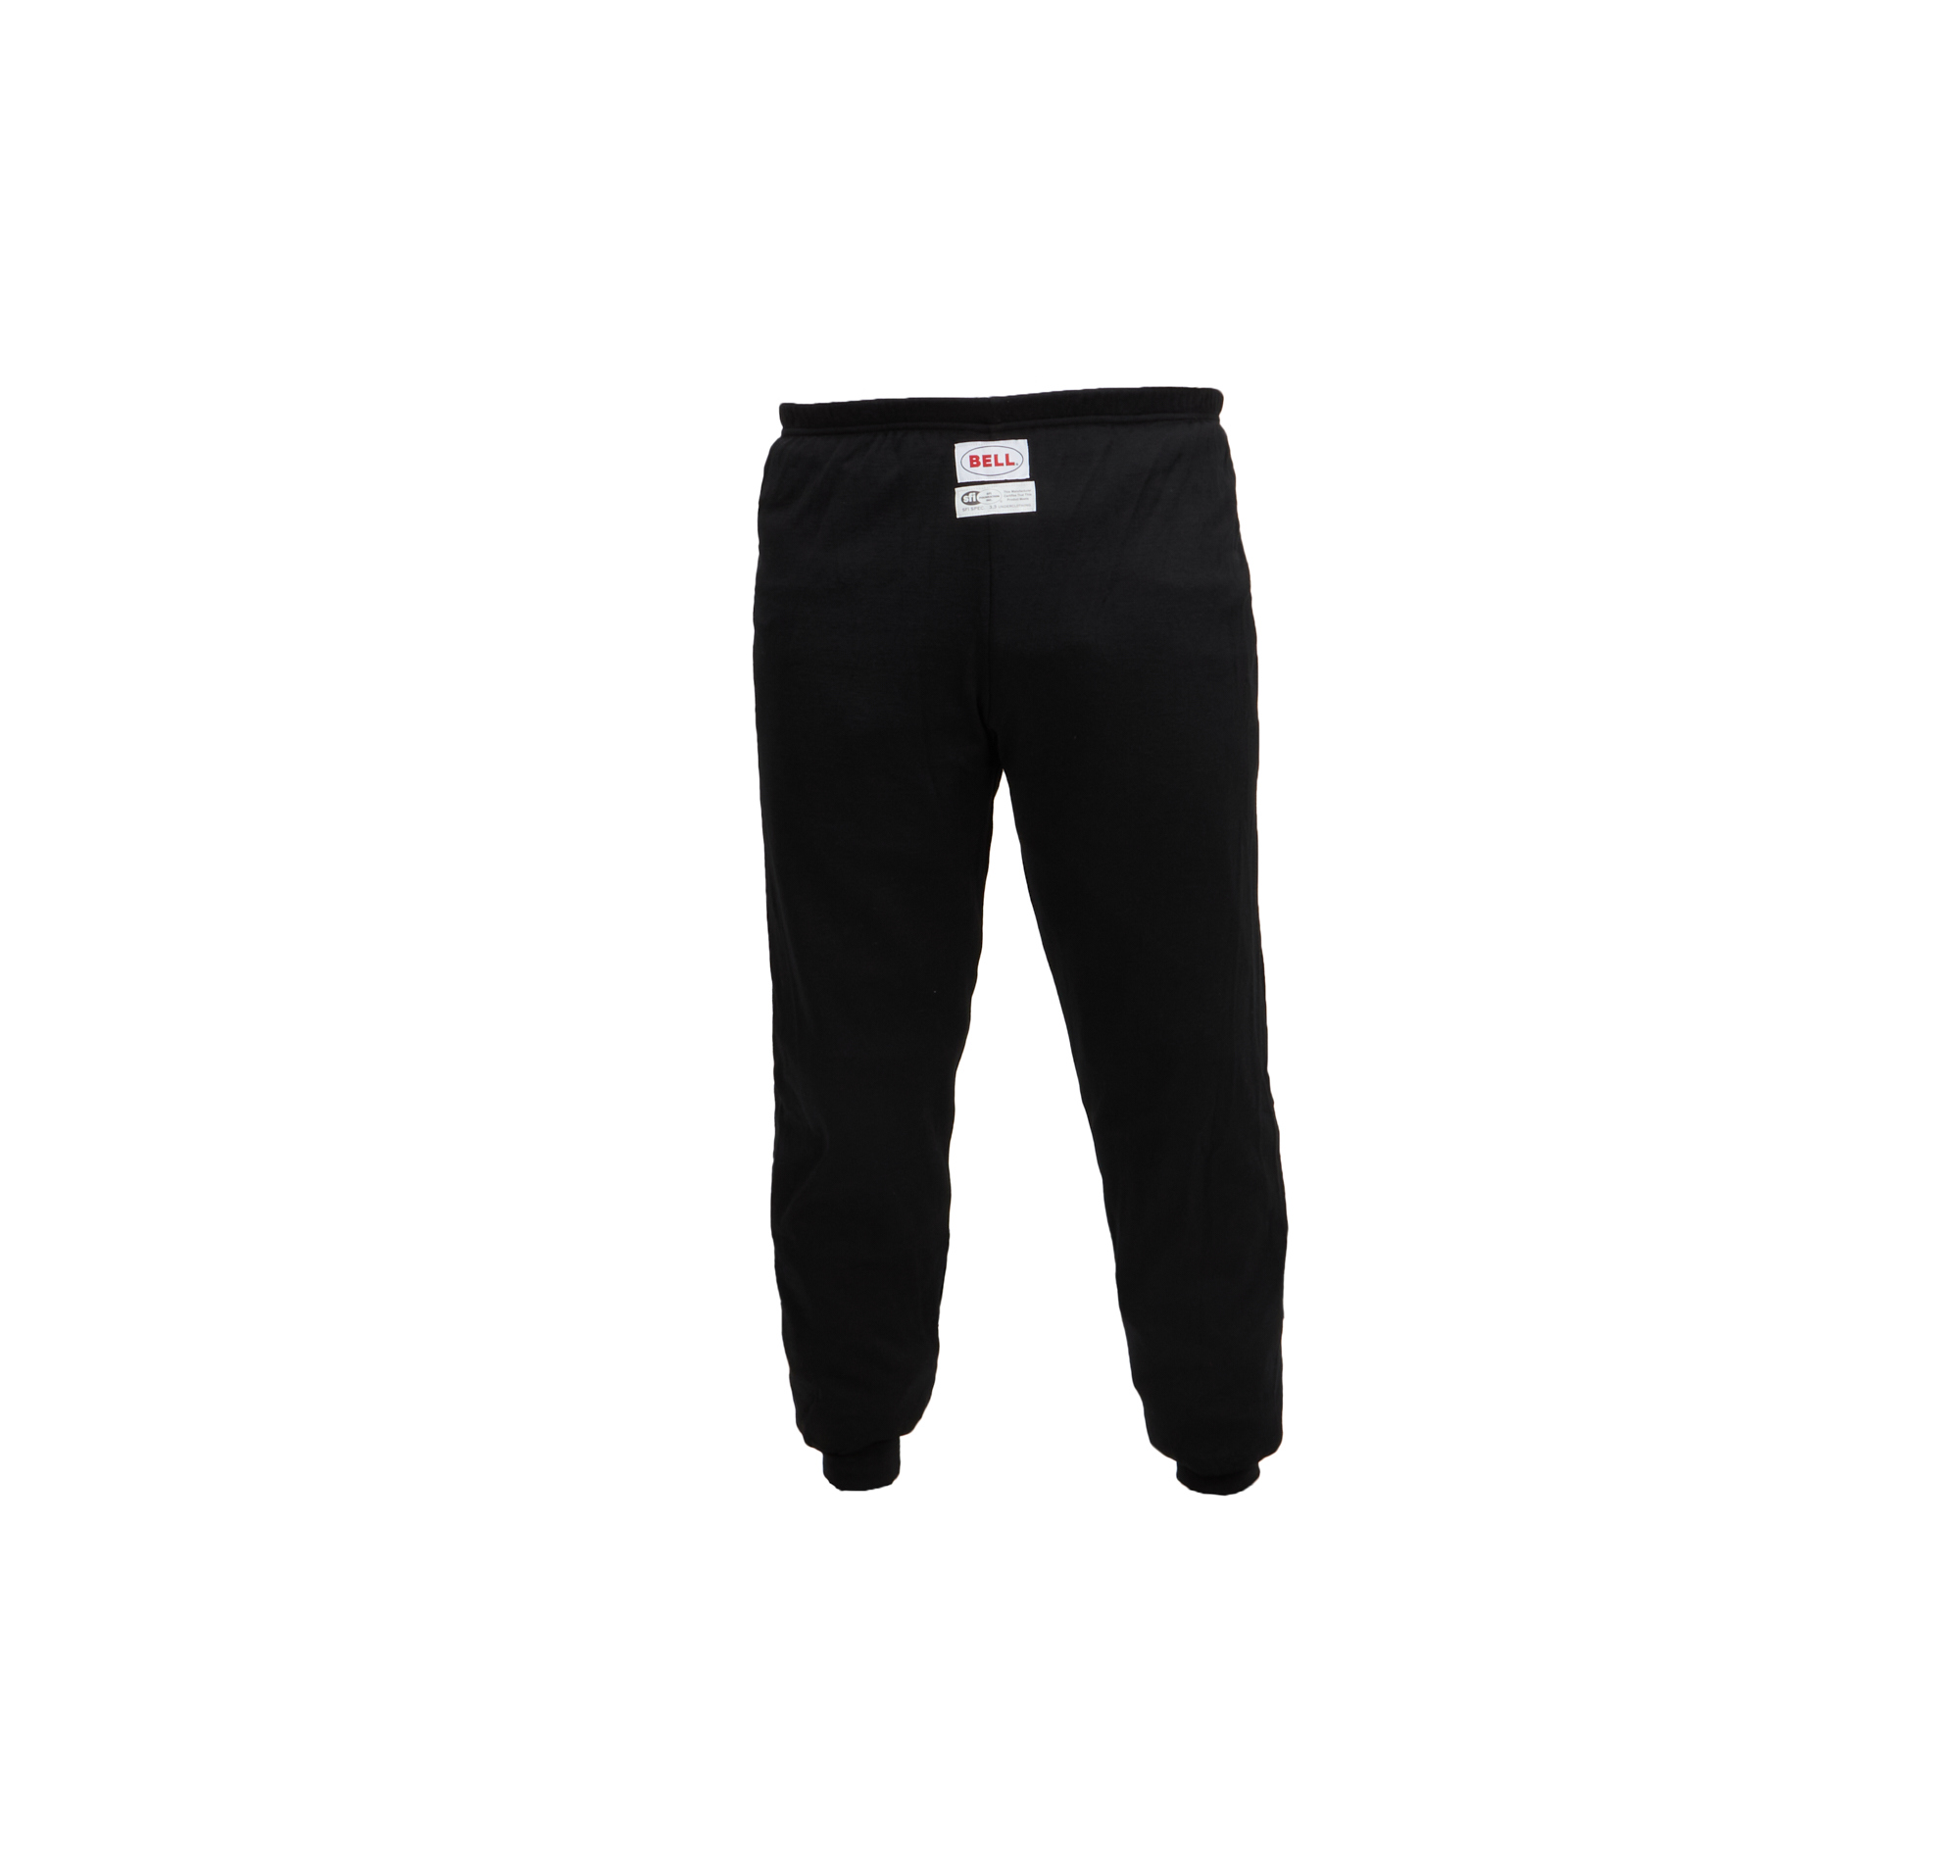 Bell Sport-TX Underwear Bottom Black Medium Sfi 3.3/5 - BR40082